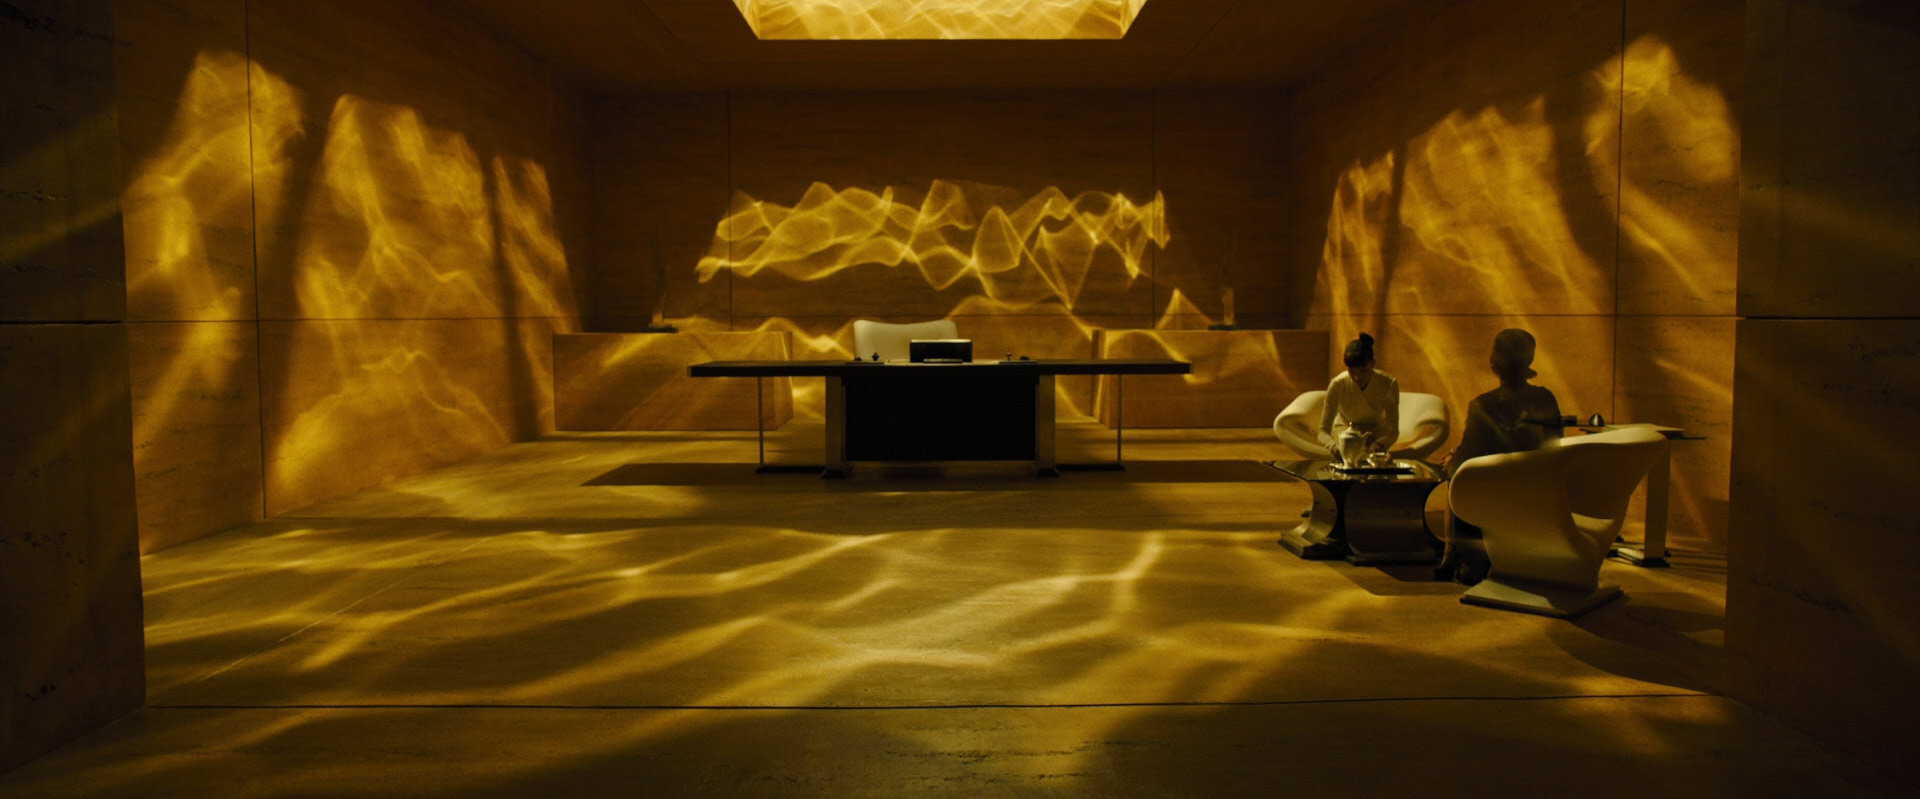 Blade-Runner-2049-0271-luv-chair-2-screening-musings.jpg